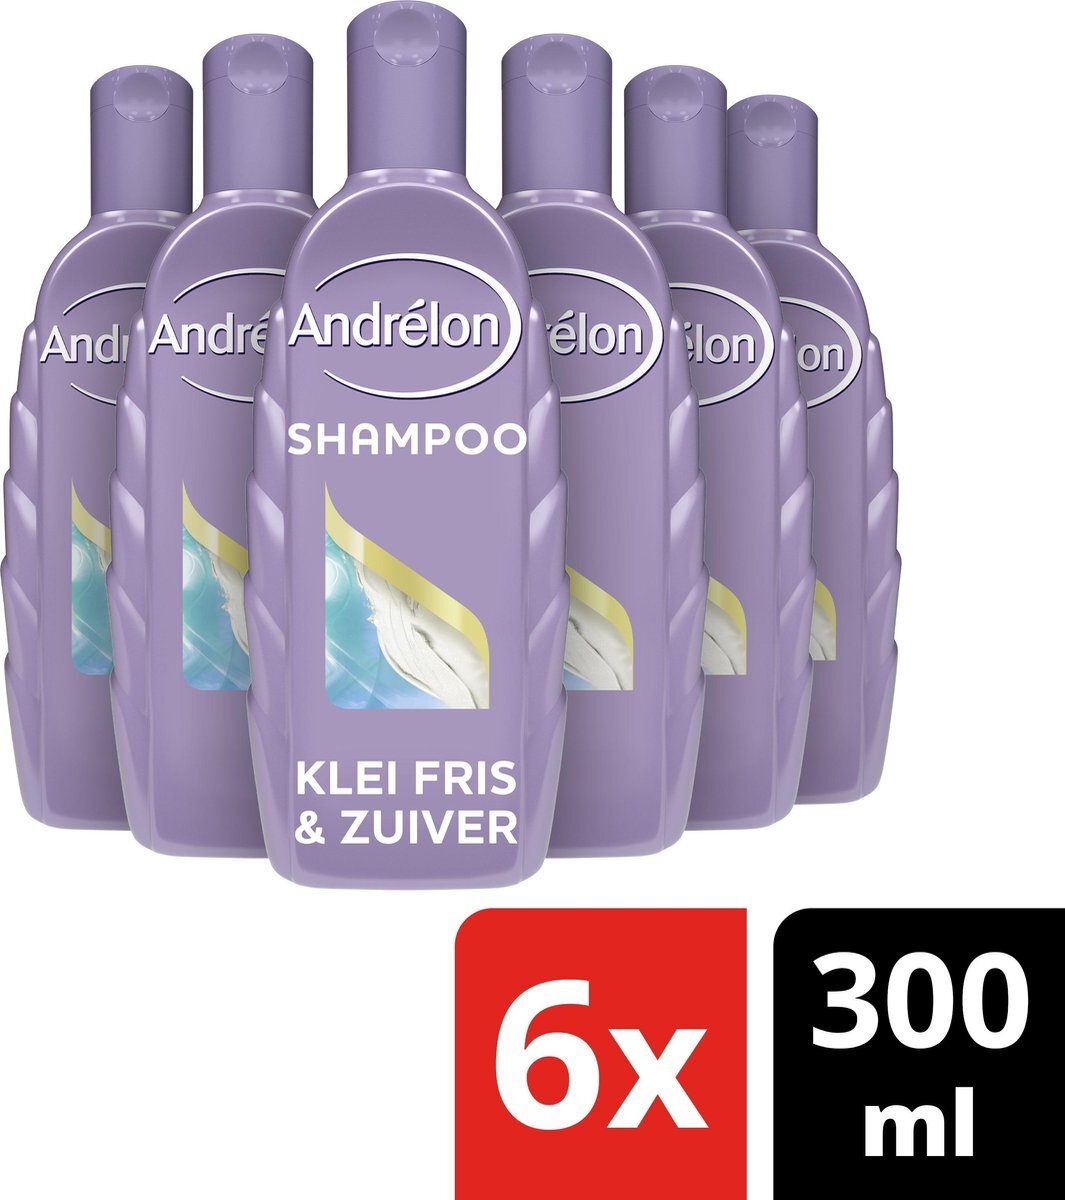 AndrÃ©lon Klei Fris & Zuiver Shampoo